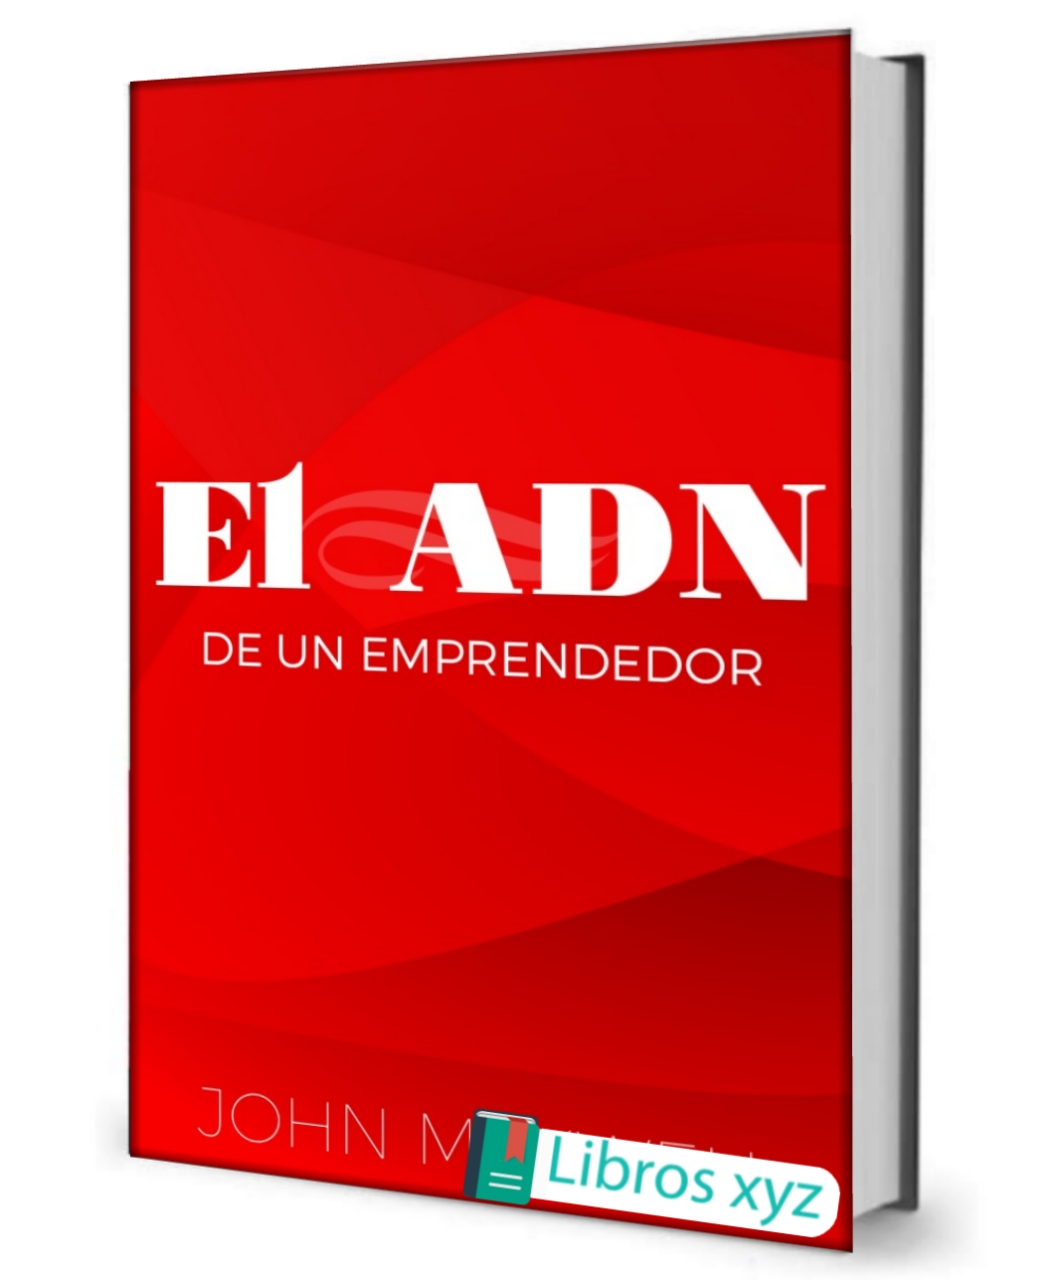 ⏩ “El adn de un emprendedor” - John Maxwell descargar pdf gratis